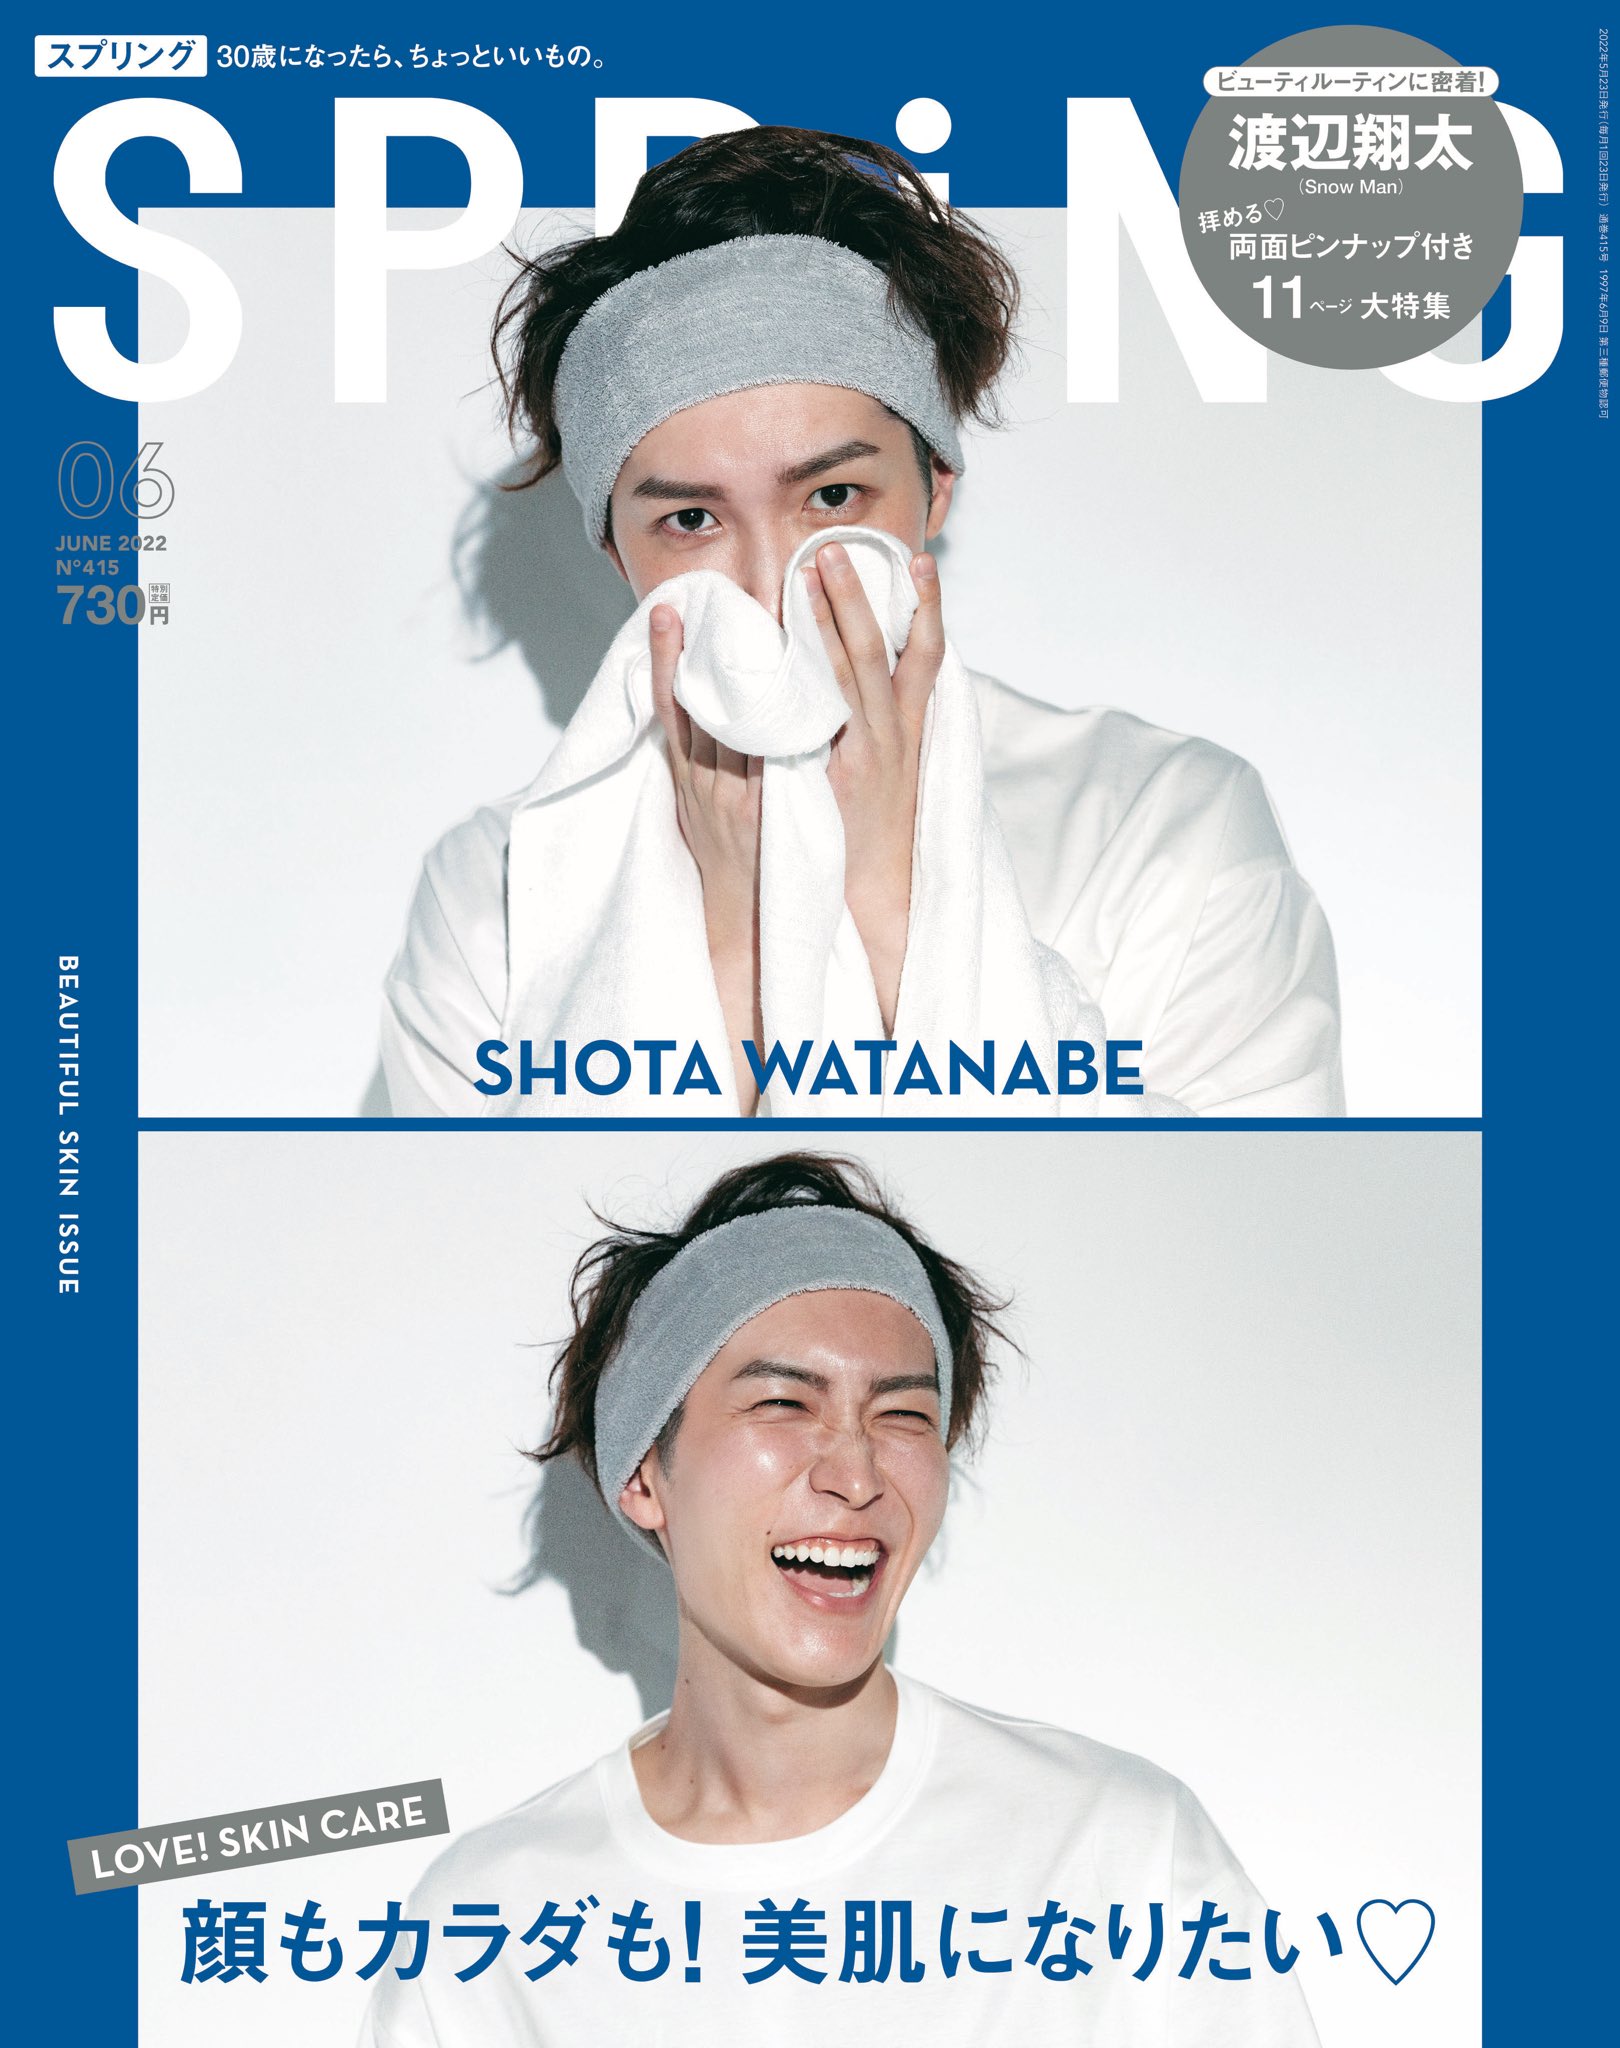 4/22発売「SPRiNG 6月号」Snow Man 渡辺翔太 表紙 | Snow Man 最新情報 ...